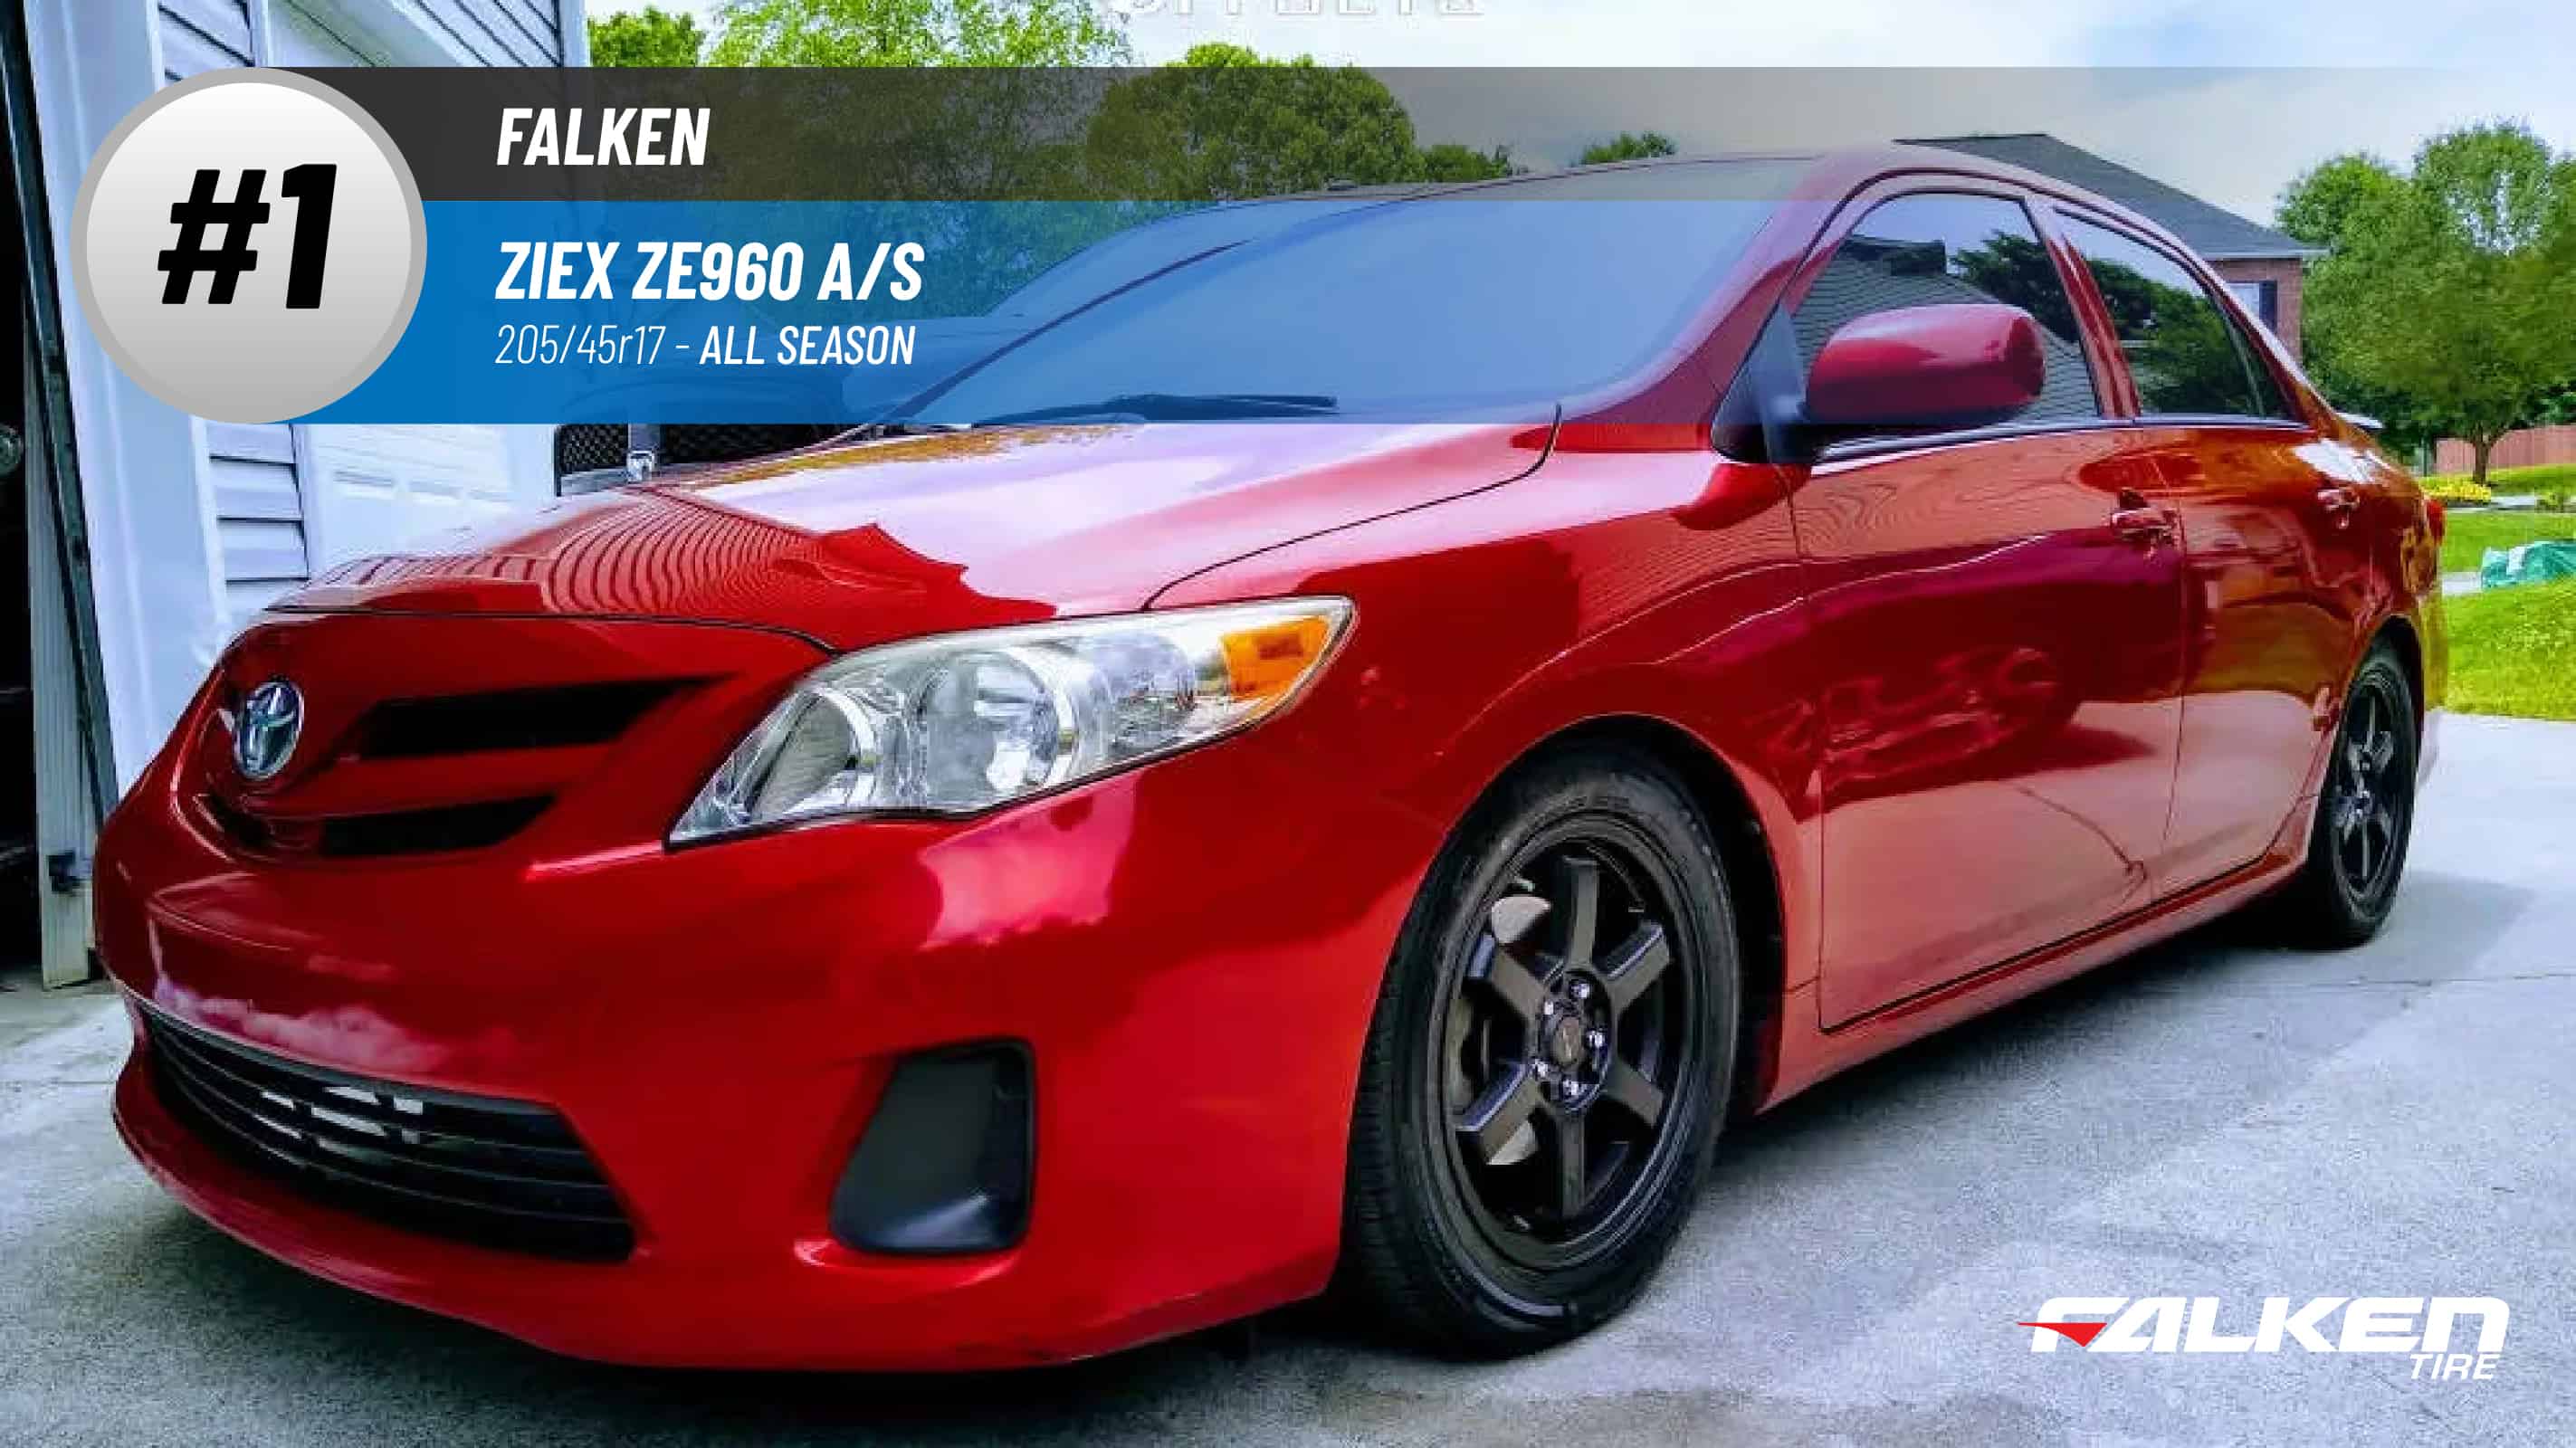 Top #1 All Season Tires: Falken Ziex ZE960 A/S – best 205/45r17